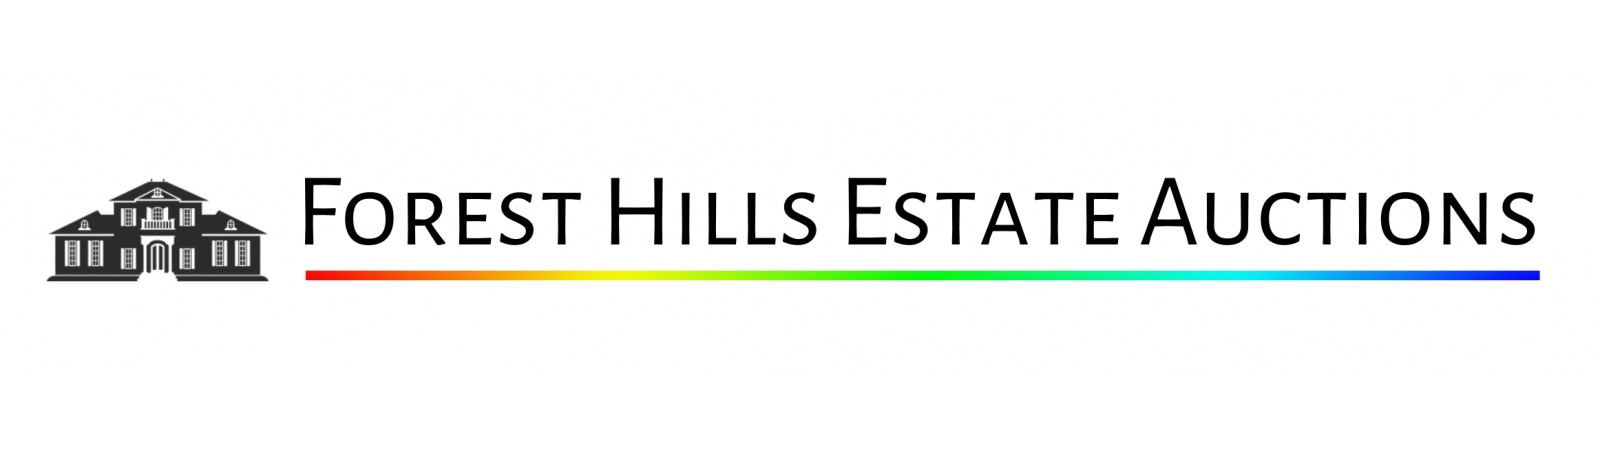 Forest Hills Estate Auctions | AuctionNinja